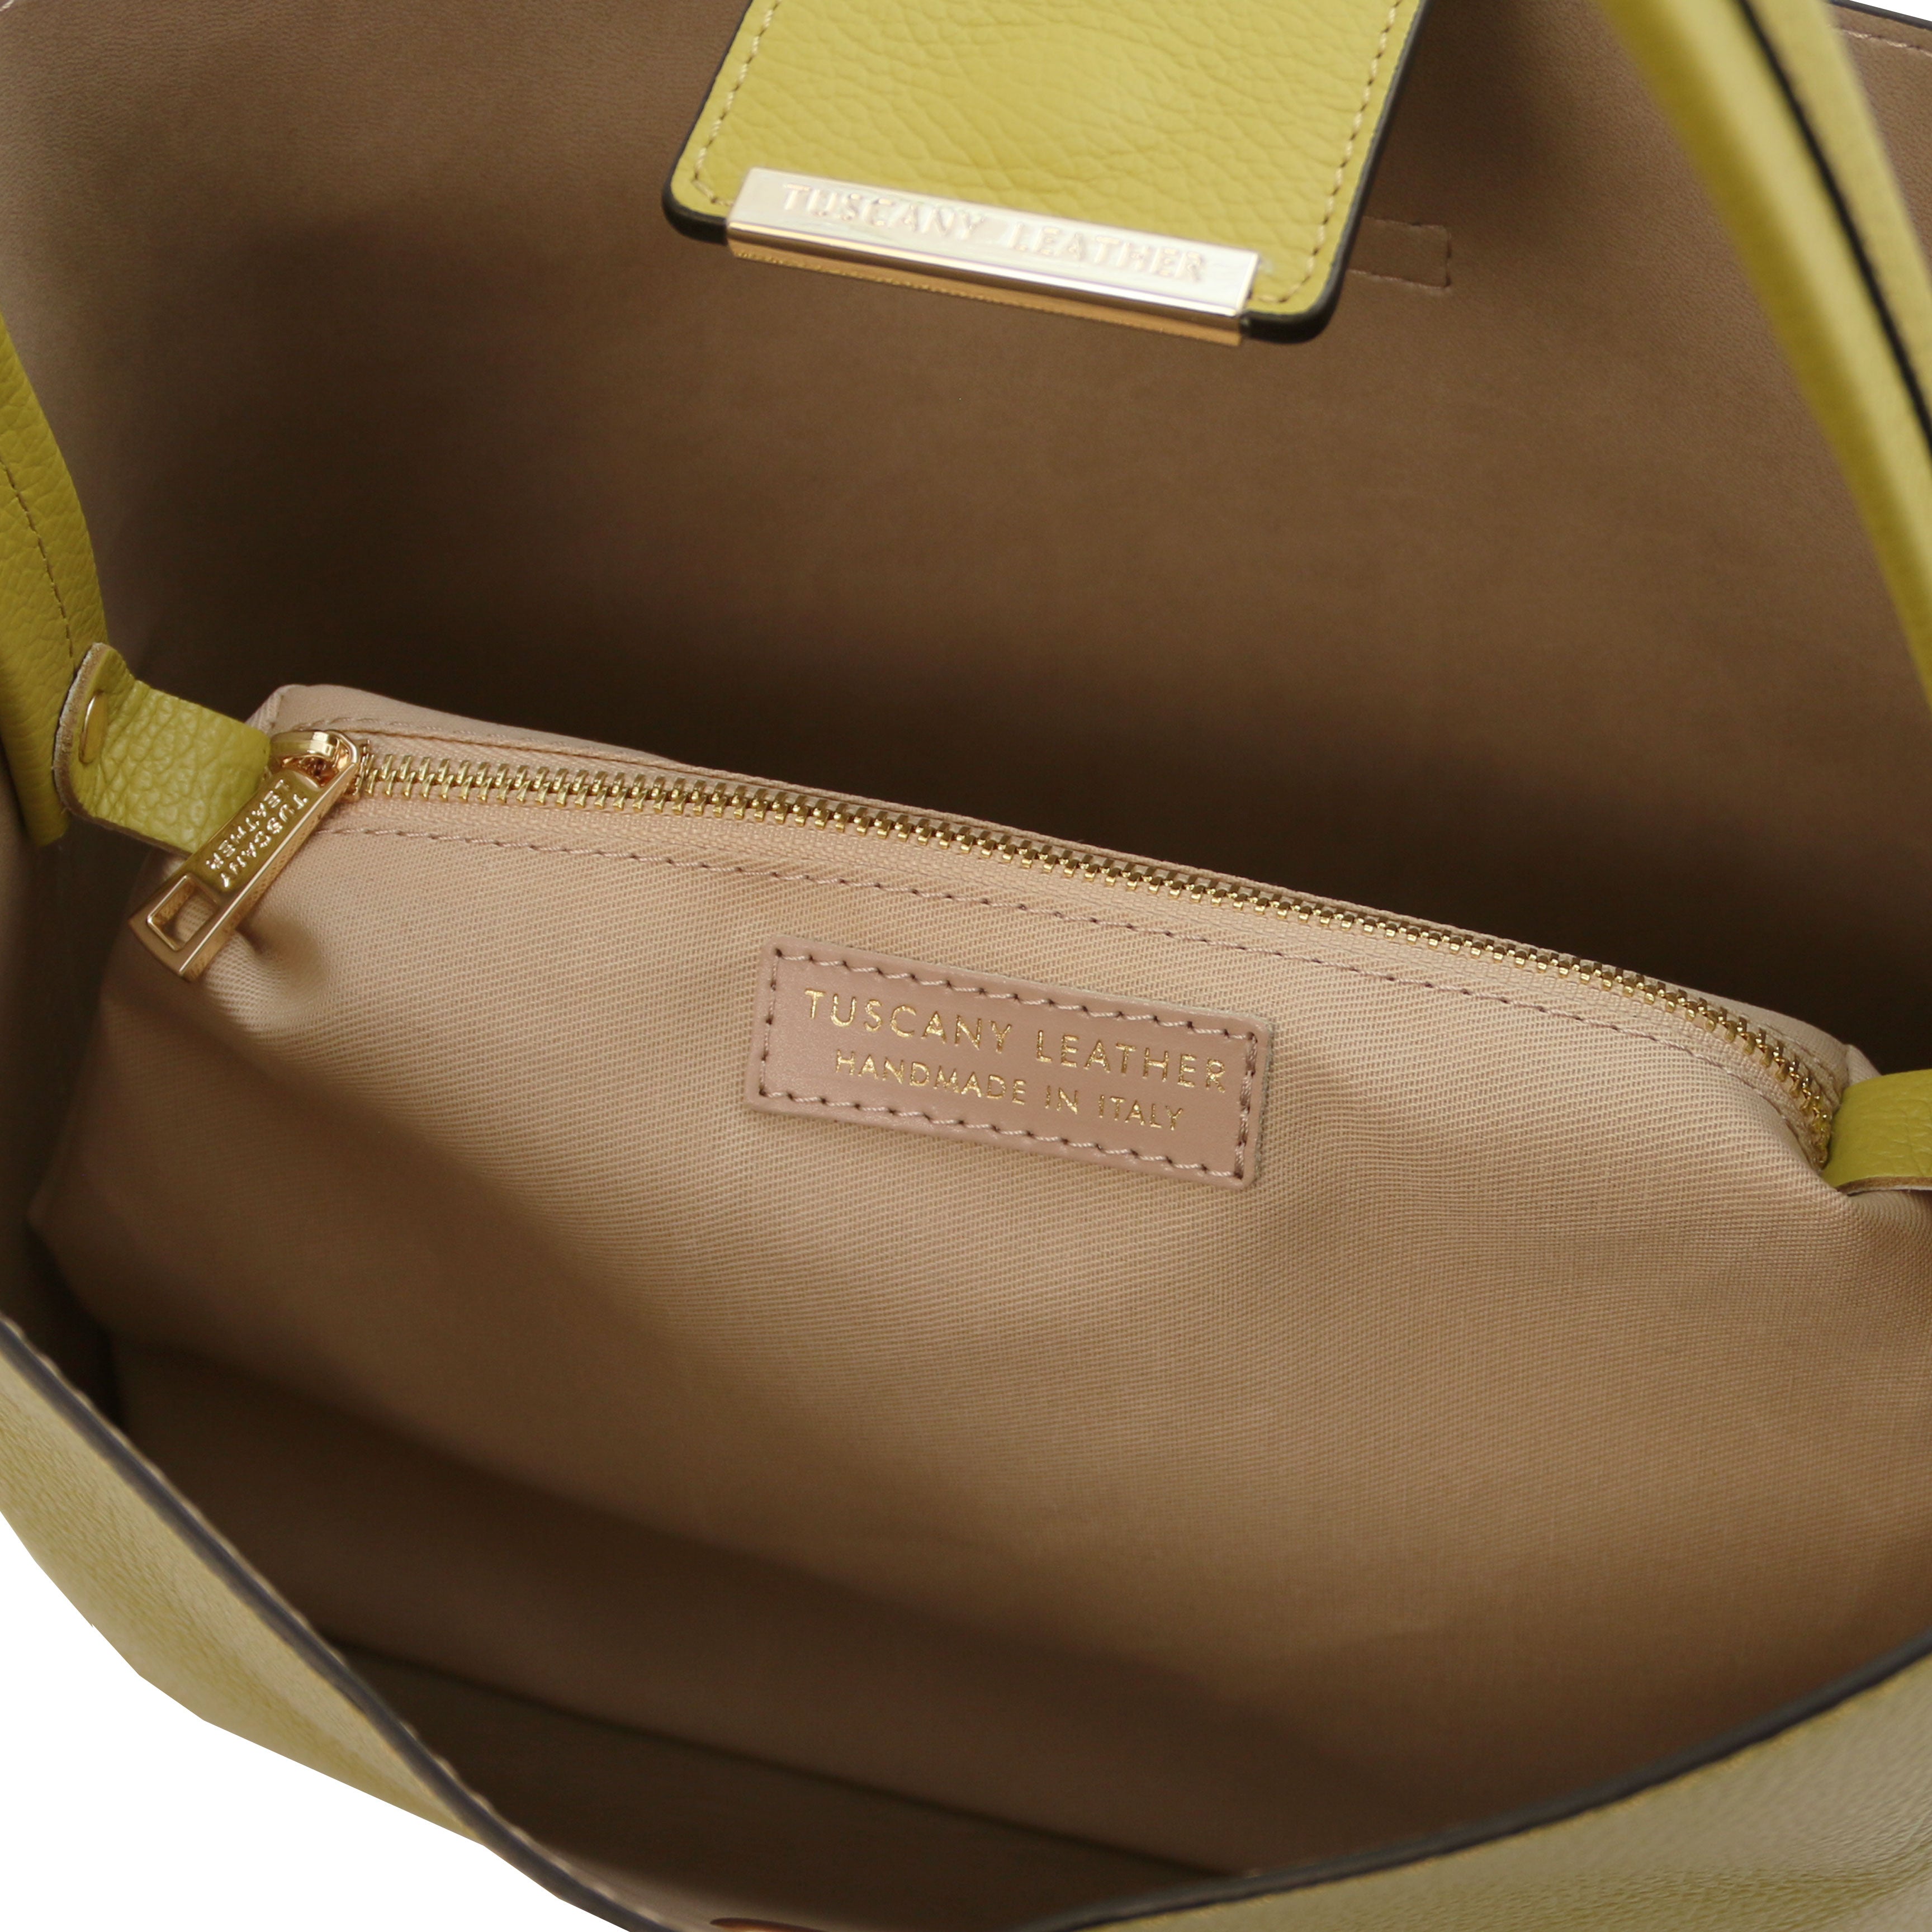 CLIO Secchiello-väska i läder